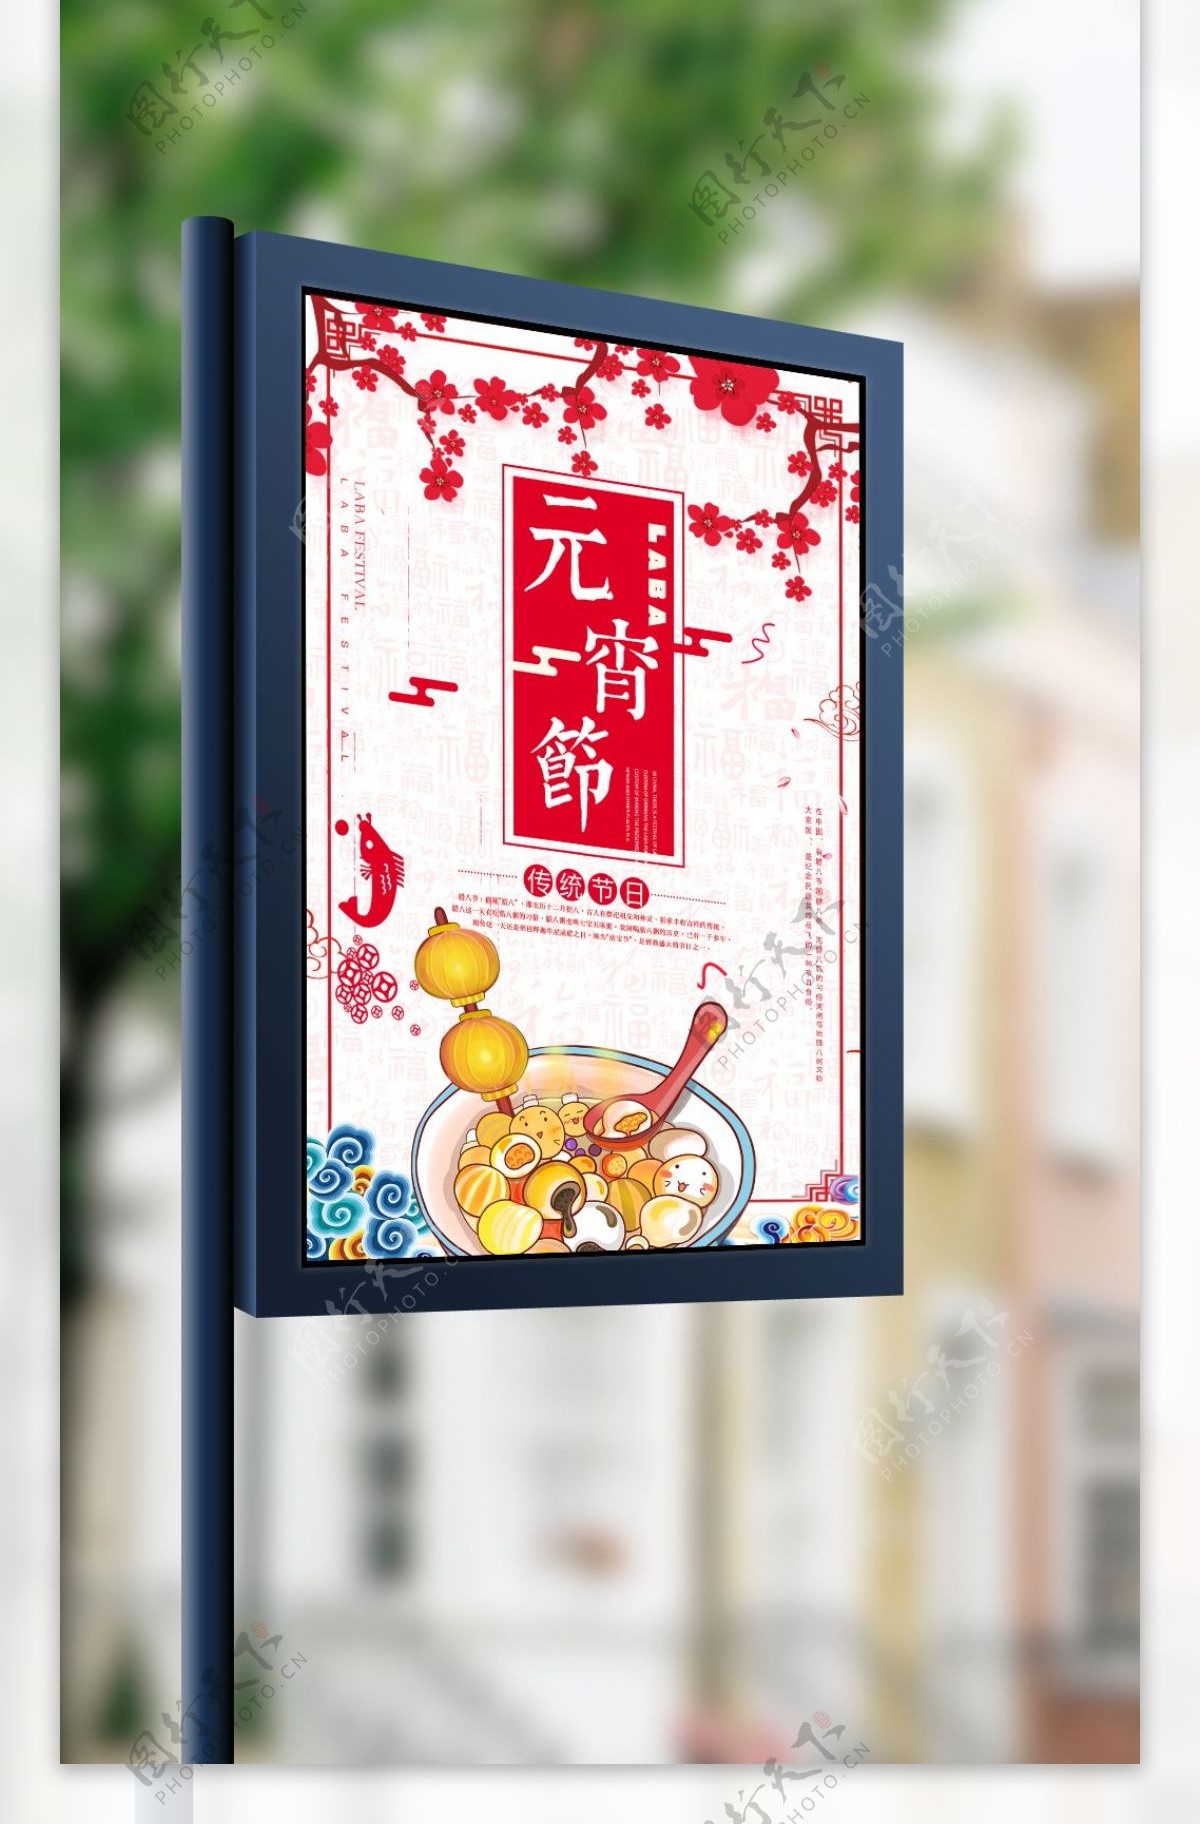 正月十五元宵节节日宣传海报